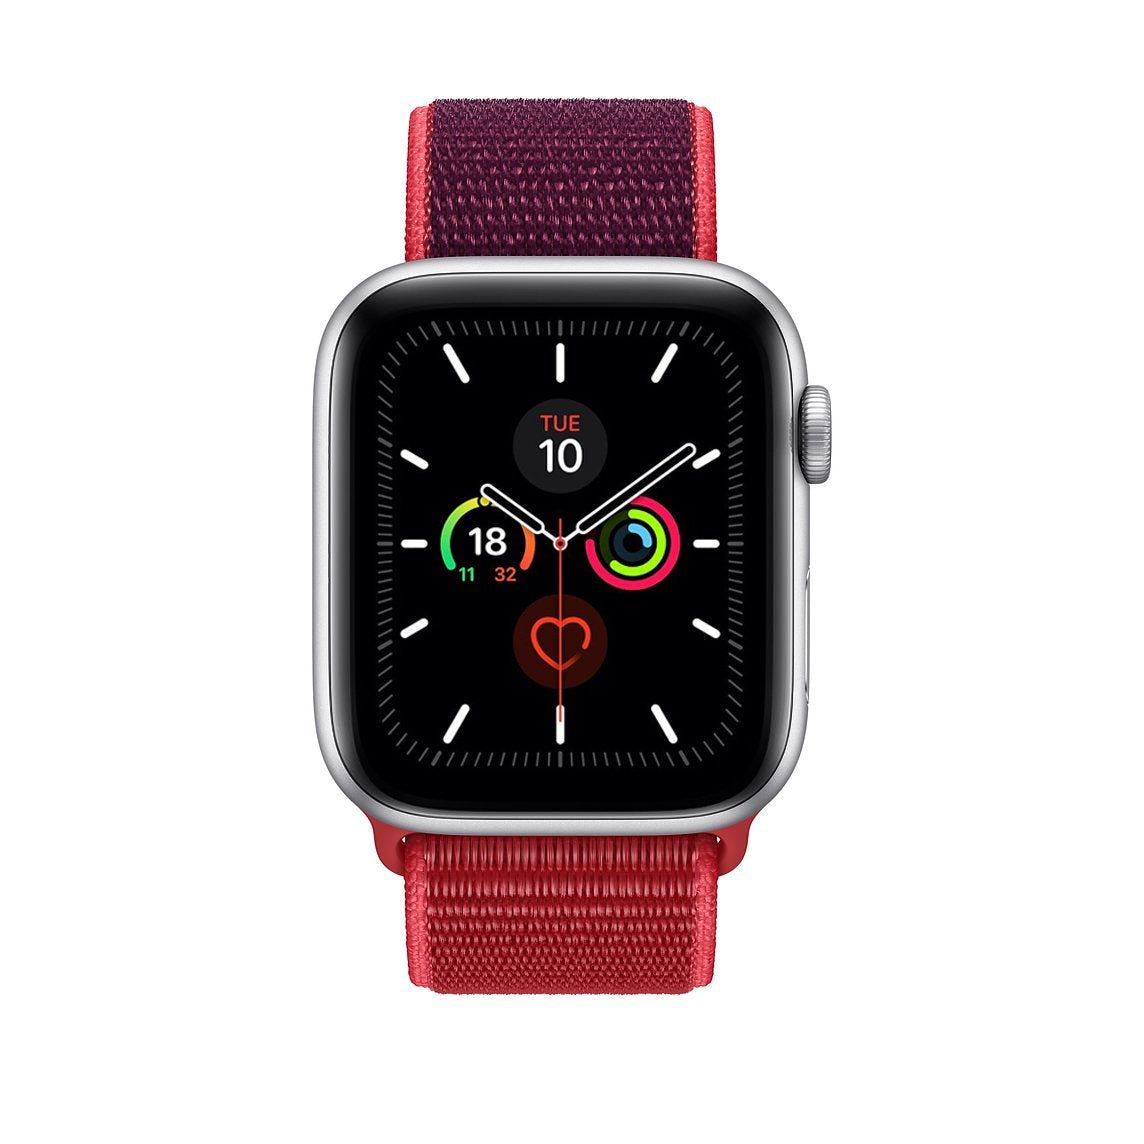 Red / Burgundy Nylon Loop for Apple Watch Nylon Loop   Accessories Gifts UK